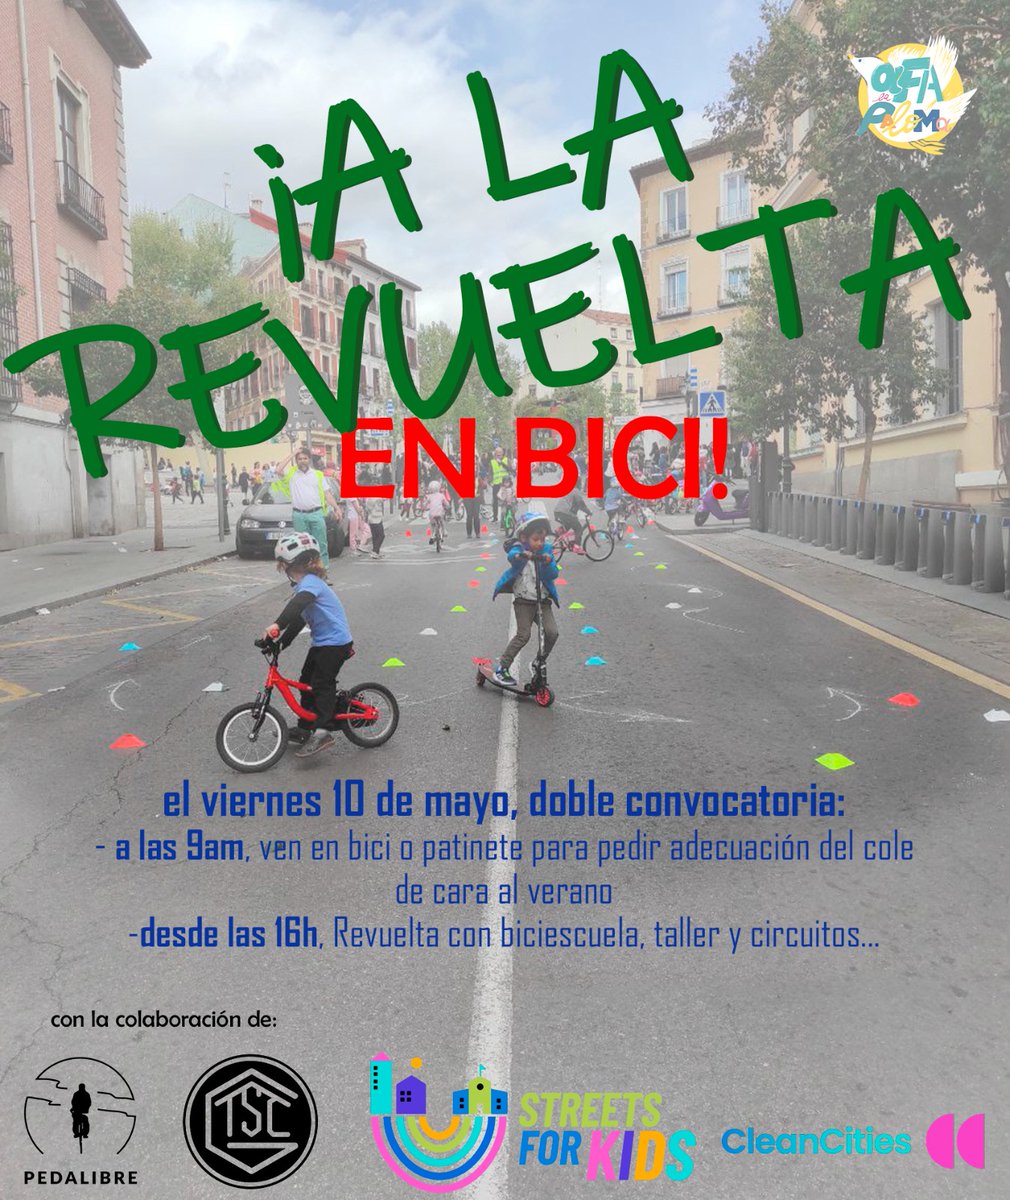 Mañana,viernes, nueva @RevueltaEscolar Estaremos en Ntra.Sra. de la Paloma junto con el @TallerBiciGDTN para reclamar #CallesAbiertasParaLaInfancia #EntornosEscolaresSeguros Que la #bicicleta tenga el papel que merece en un nuevo modelo de #MovilidadSostenible 🚲👩‍👦 @afalapaloma